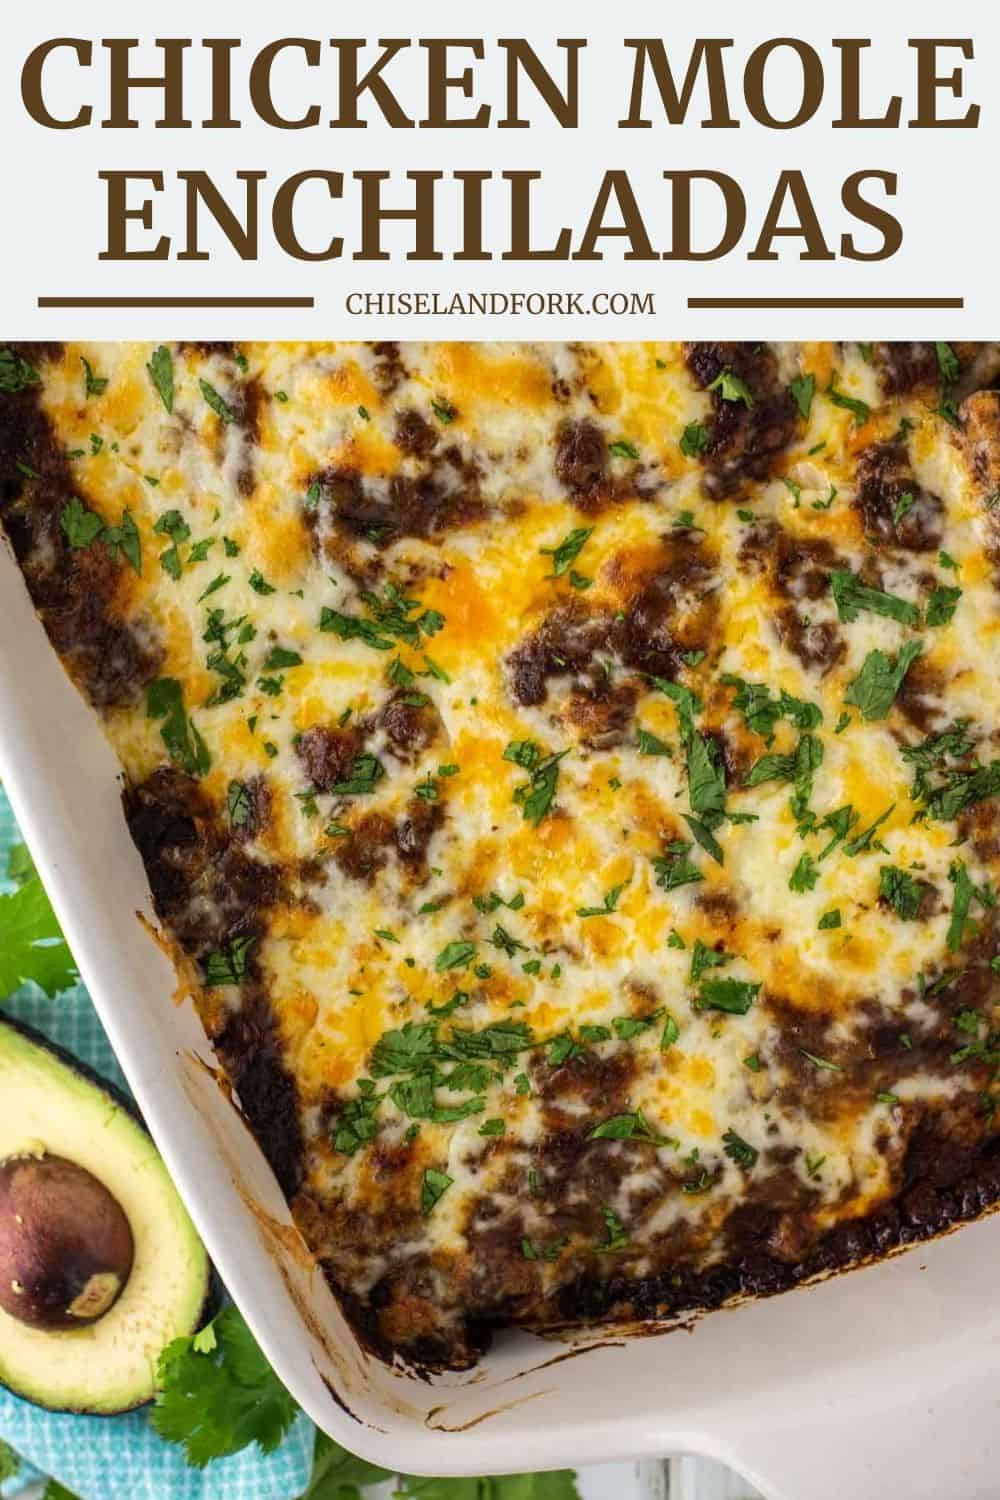 Chicken Mole Enchiladas Recipe - A Tasty Family Dinner - Chisel & Fork